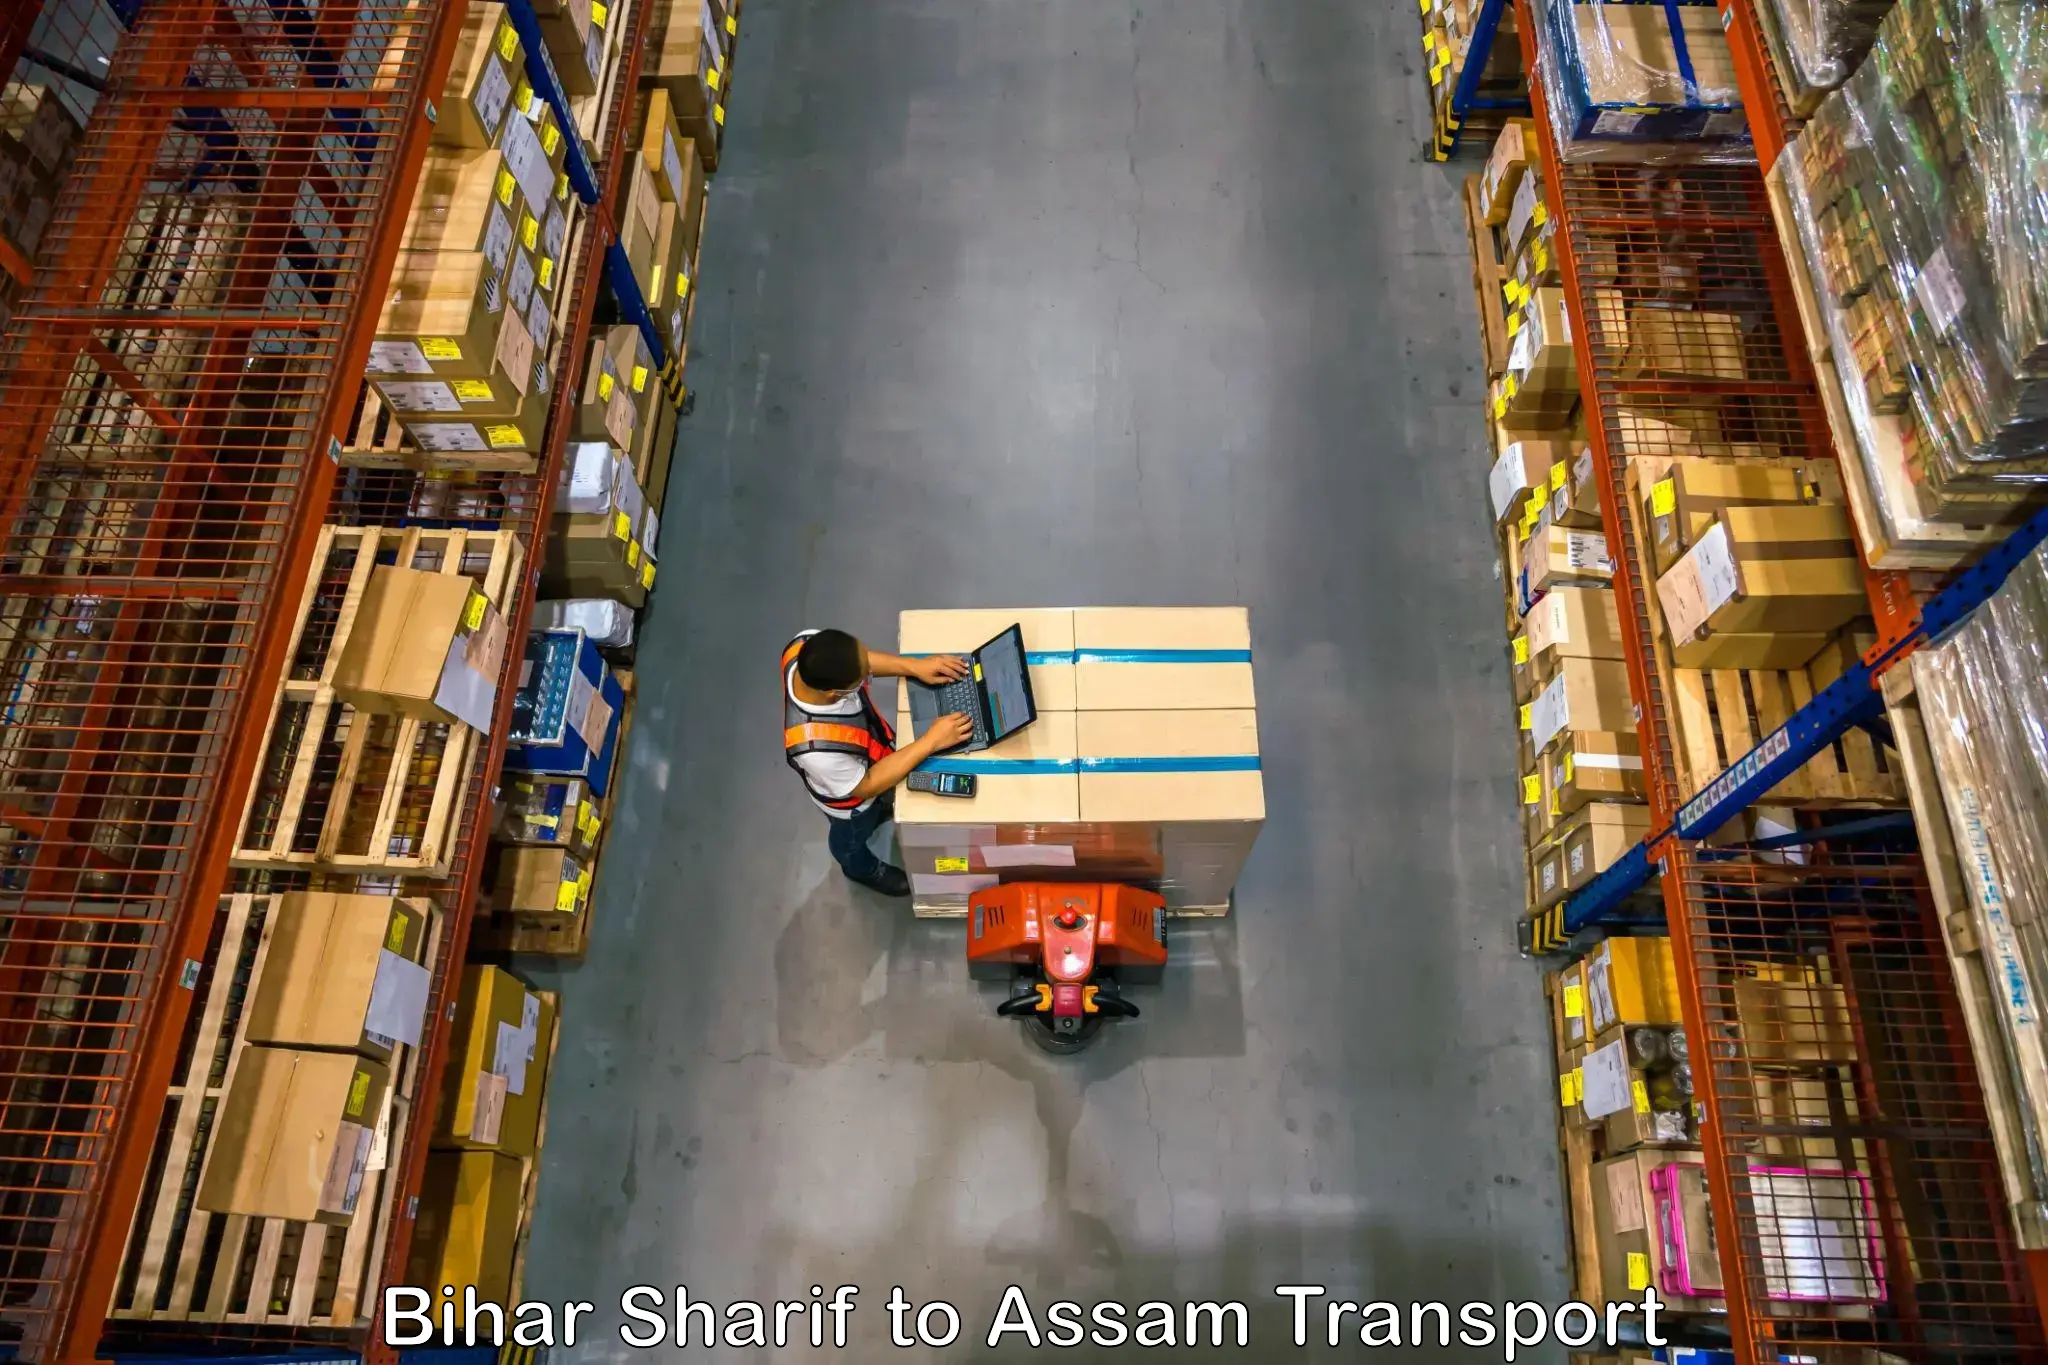 Nearest transport service Bihar Sharif to Balighat